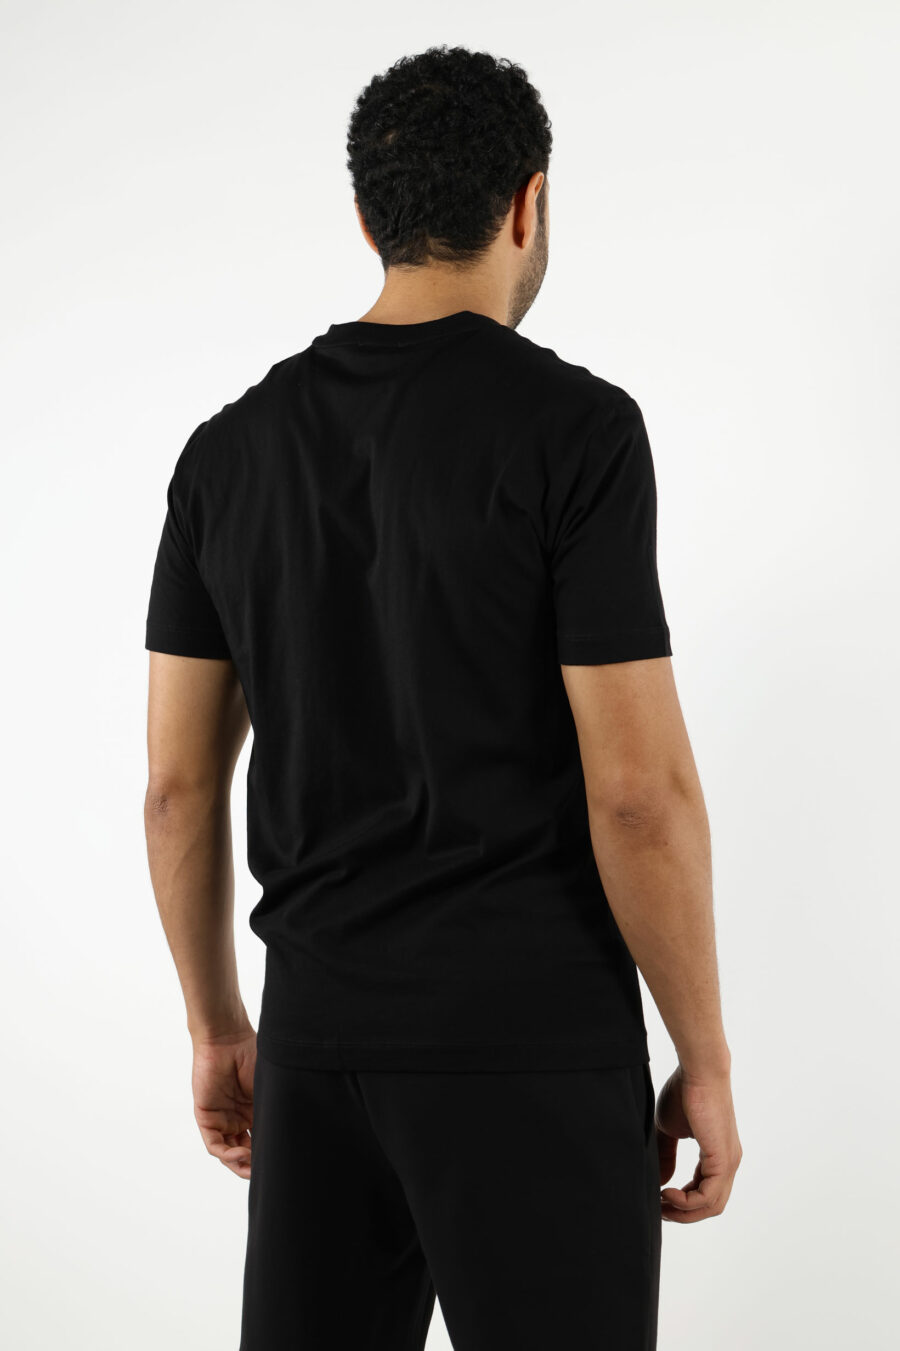 T-shirt preta com maxilogo "lux identity" em degradé - 110865